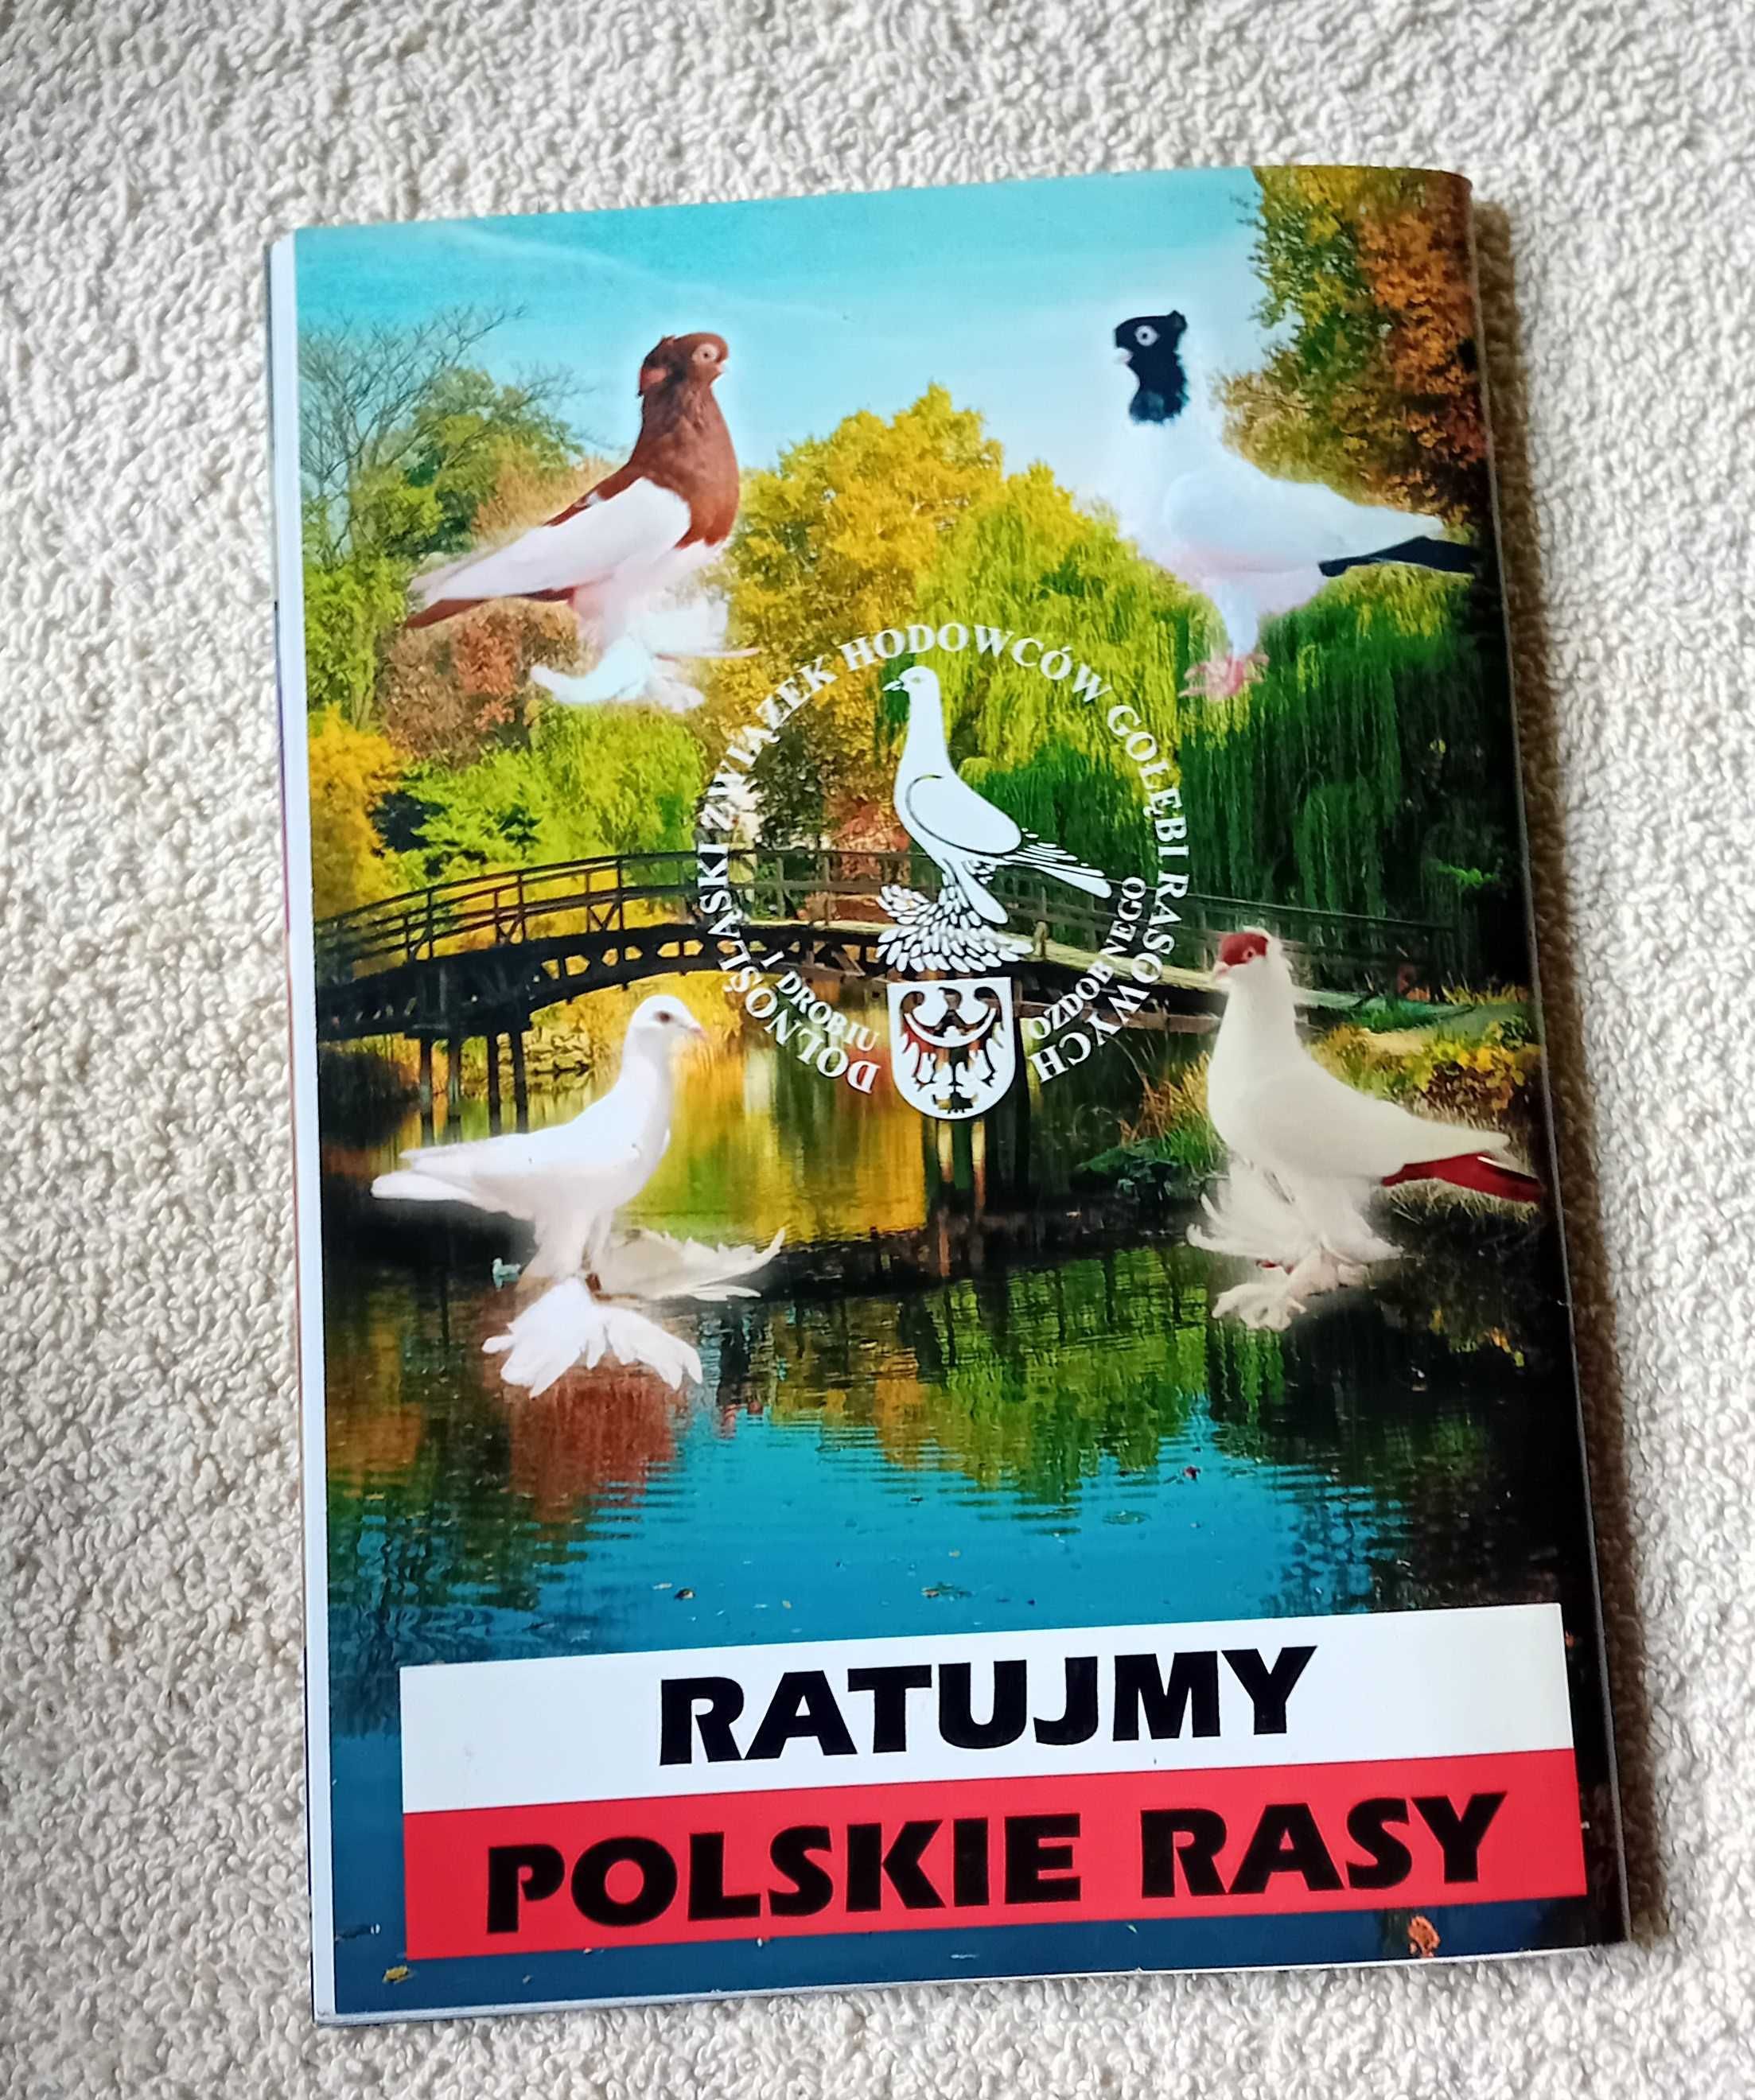 Katalog XVIII Dolnośląska Wystawa Gołębi Rasowych Wrocław 2007.